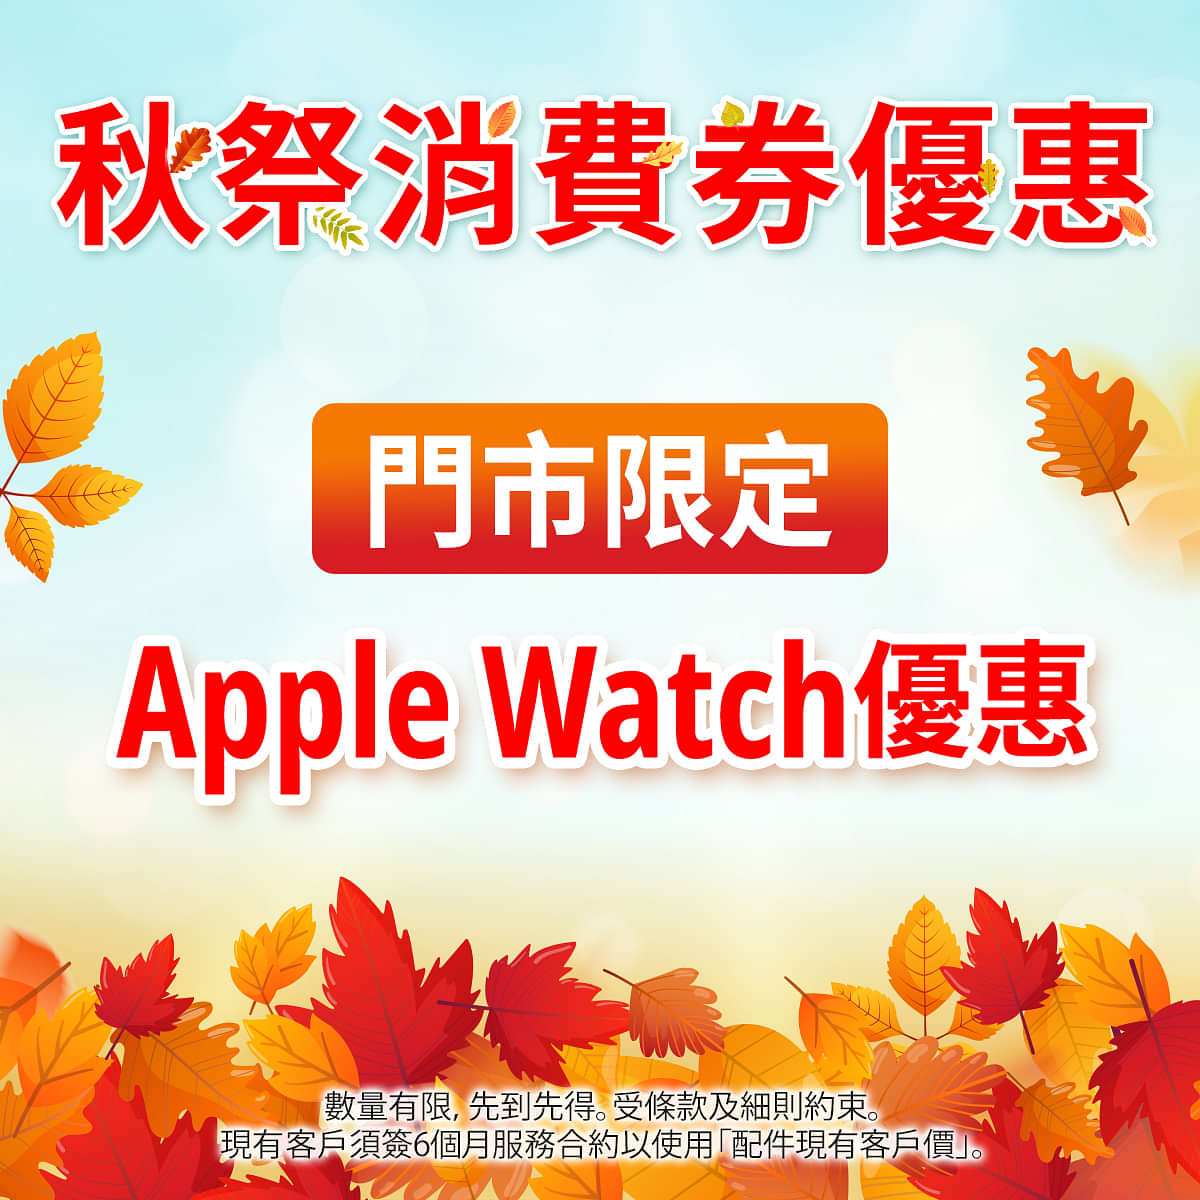 【現有客戶專享 Apple Watch Series 8 | Apple Watch SE (第2代) 超筍優惠 】
Apple Watch Series 8 配備先進的健康感應器和多款 app，加上車禍偵測、睡眠階段追蹤和進階體能訓練